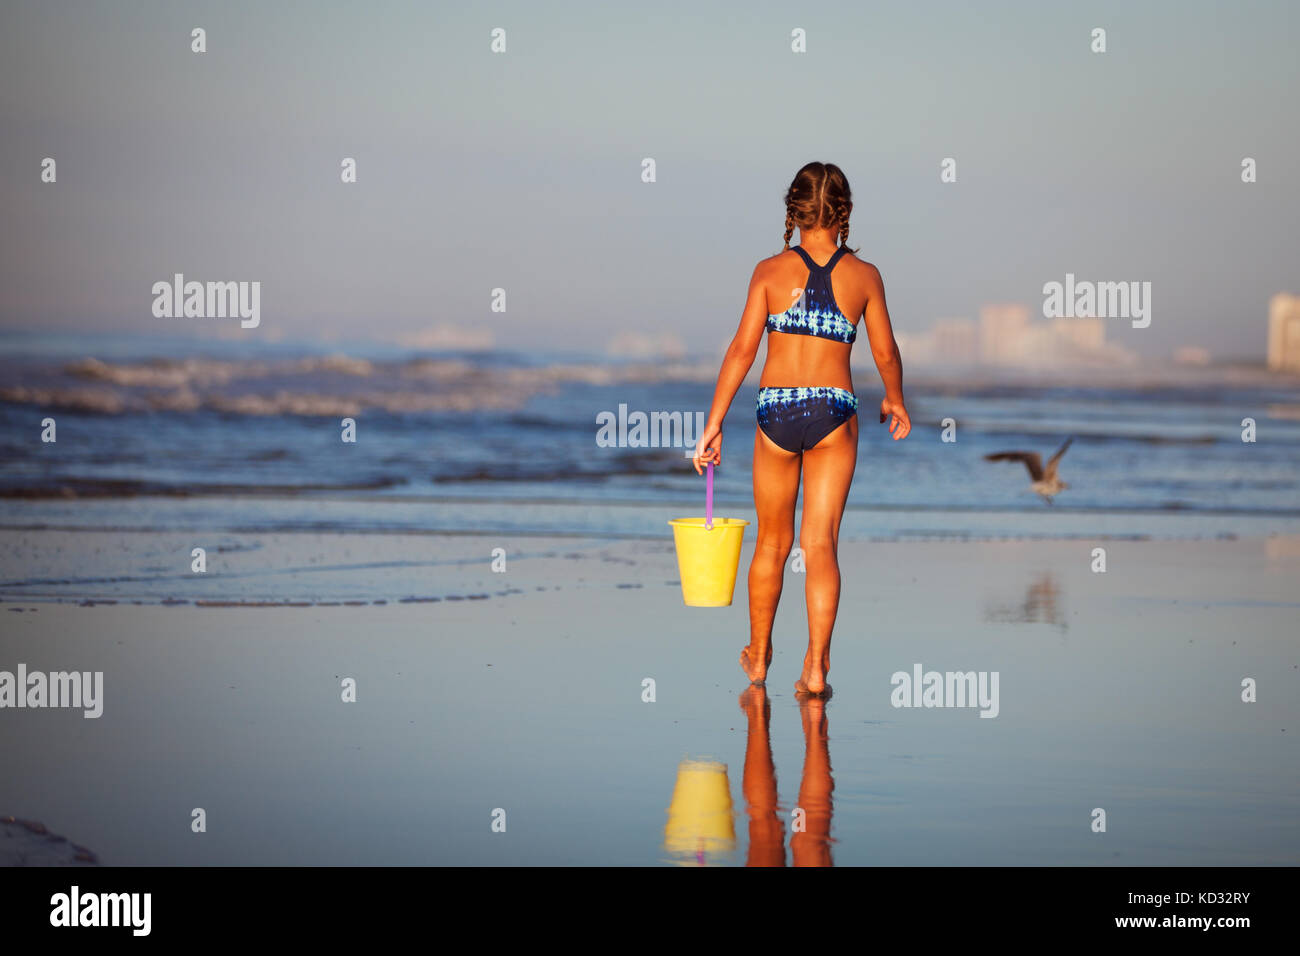 Vista posteriore di una ragazza sulla spiaggia tenendo la benna, North Myrtle Beach, Carolina del Sud, Stati Uniti, America del Nord Foto Stock